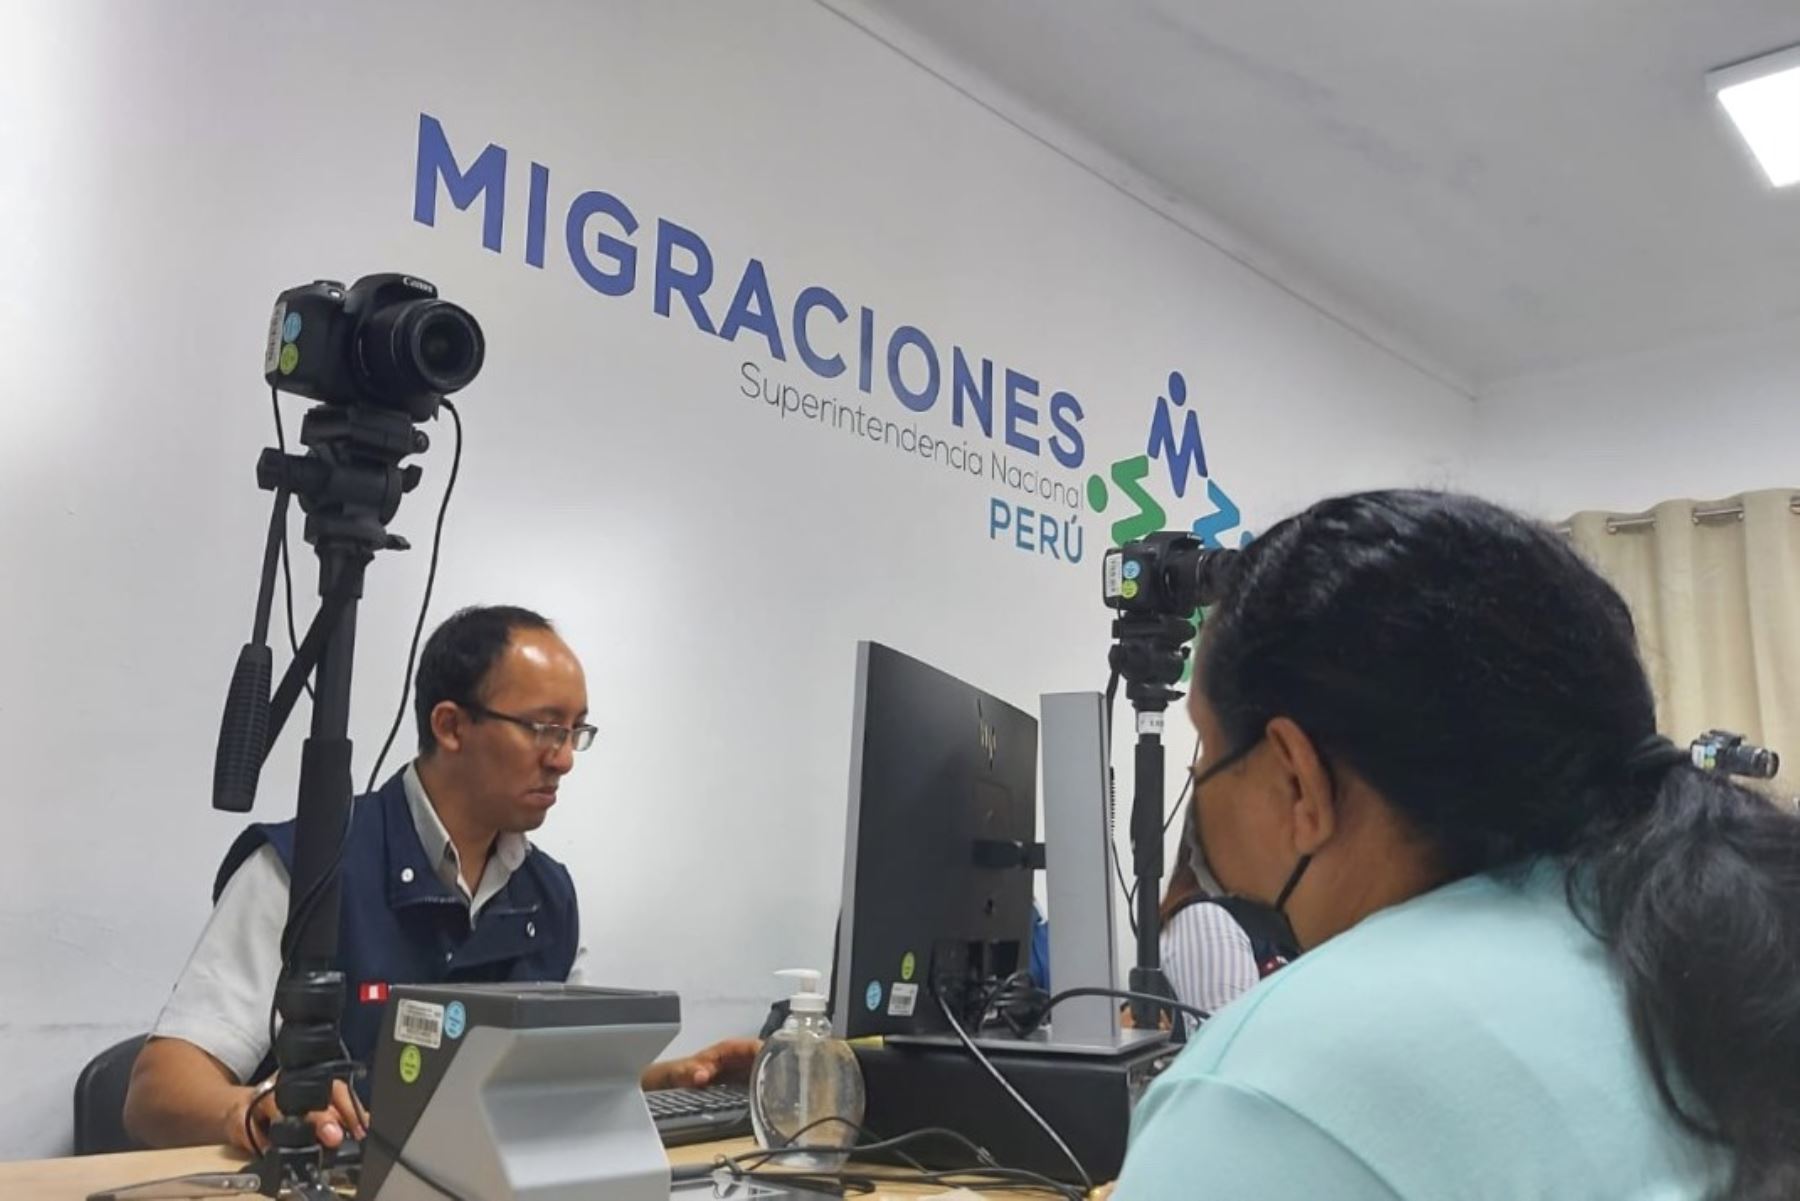 Migraciones atiende a extranjeros en conos de Lima para regularizar su situación migratoria. Foto: ANDINA/difusión.